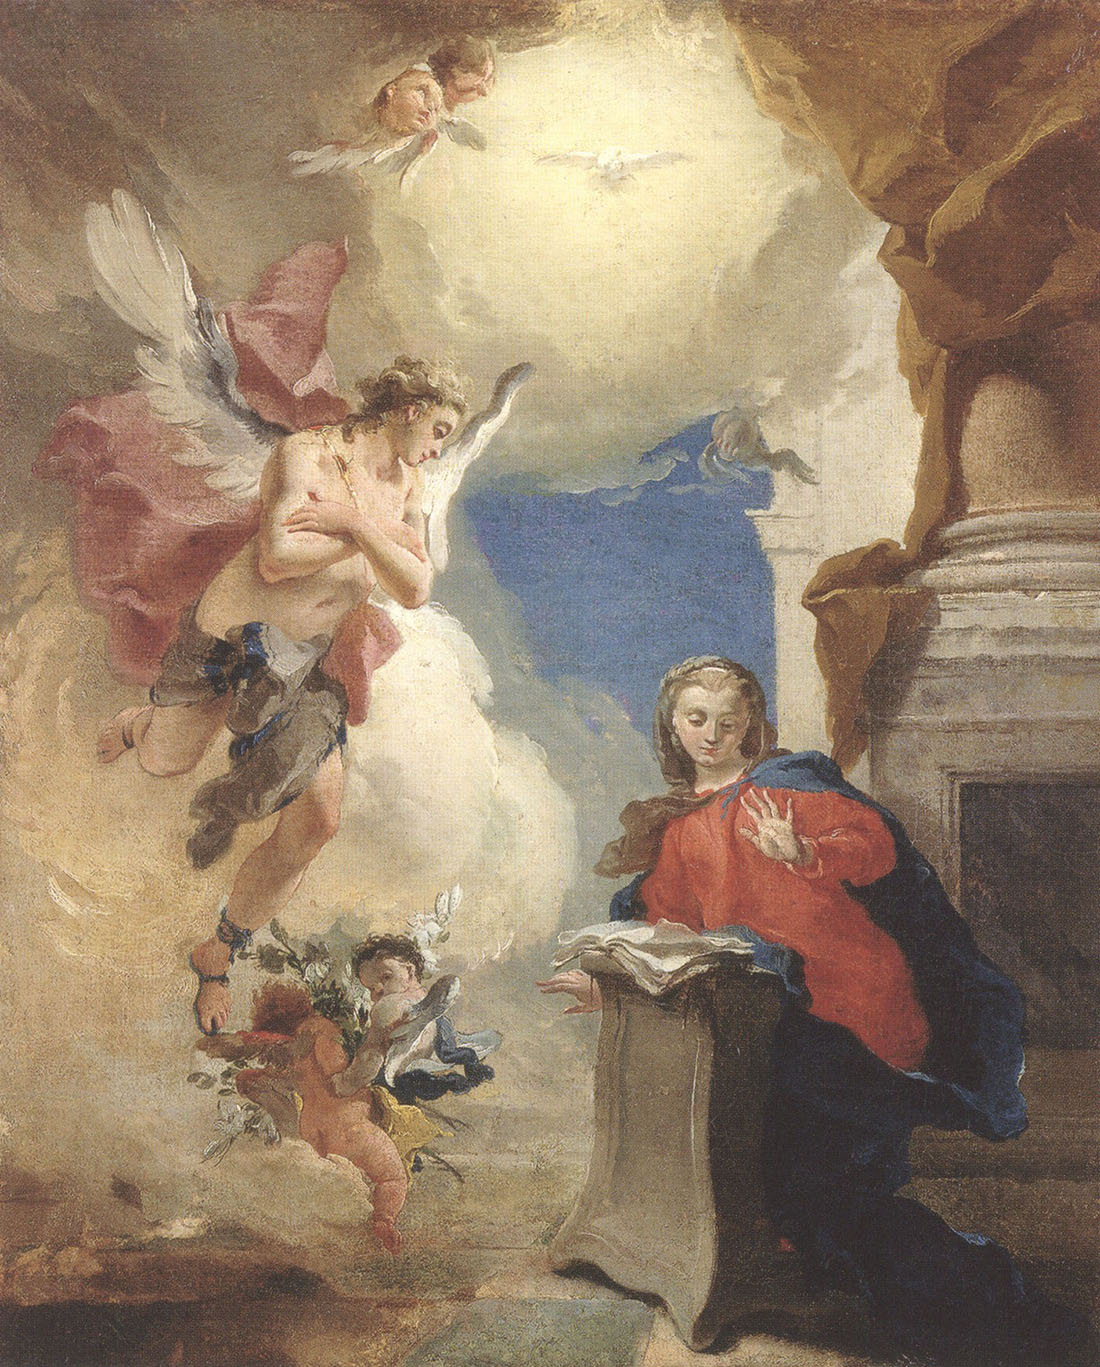 Джованни Баттиста Тьеполо. "Благовещение". Между 1724 и 1725.